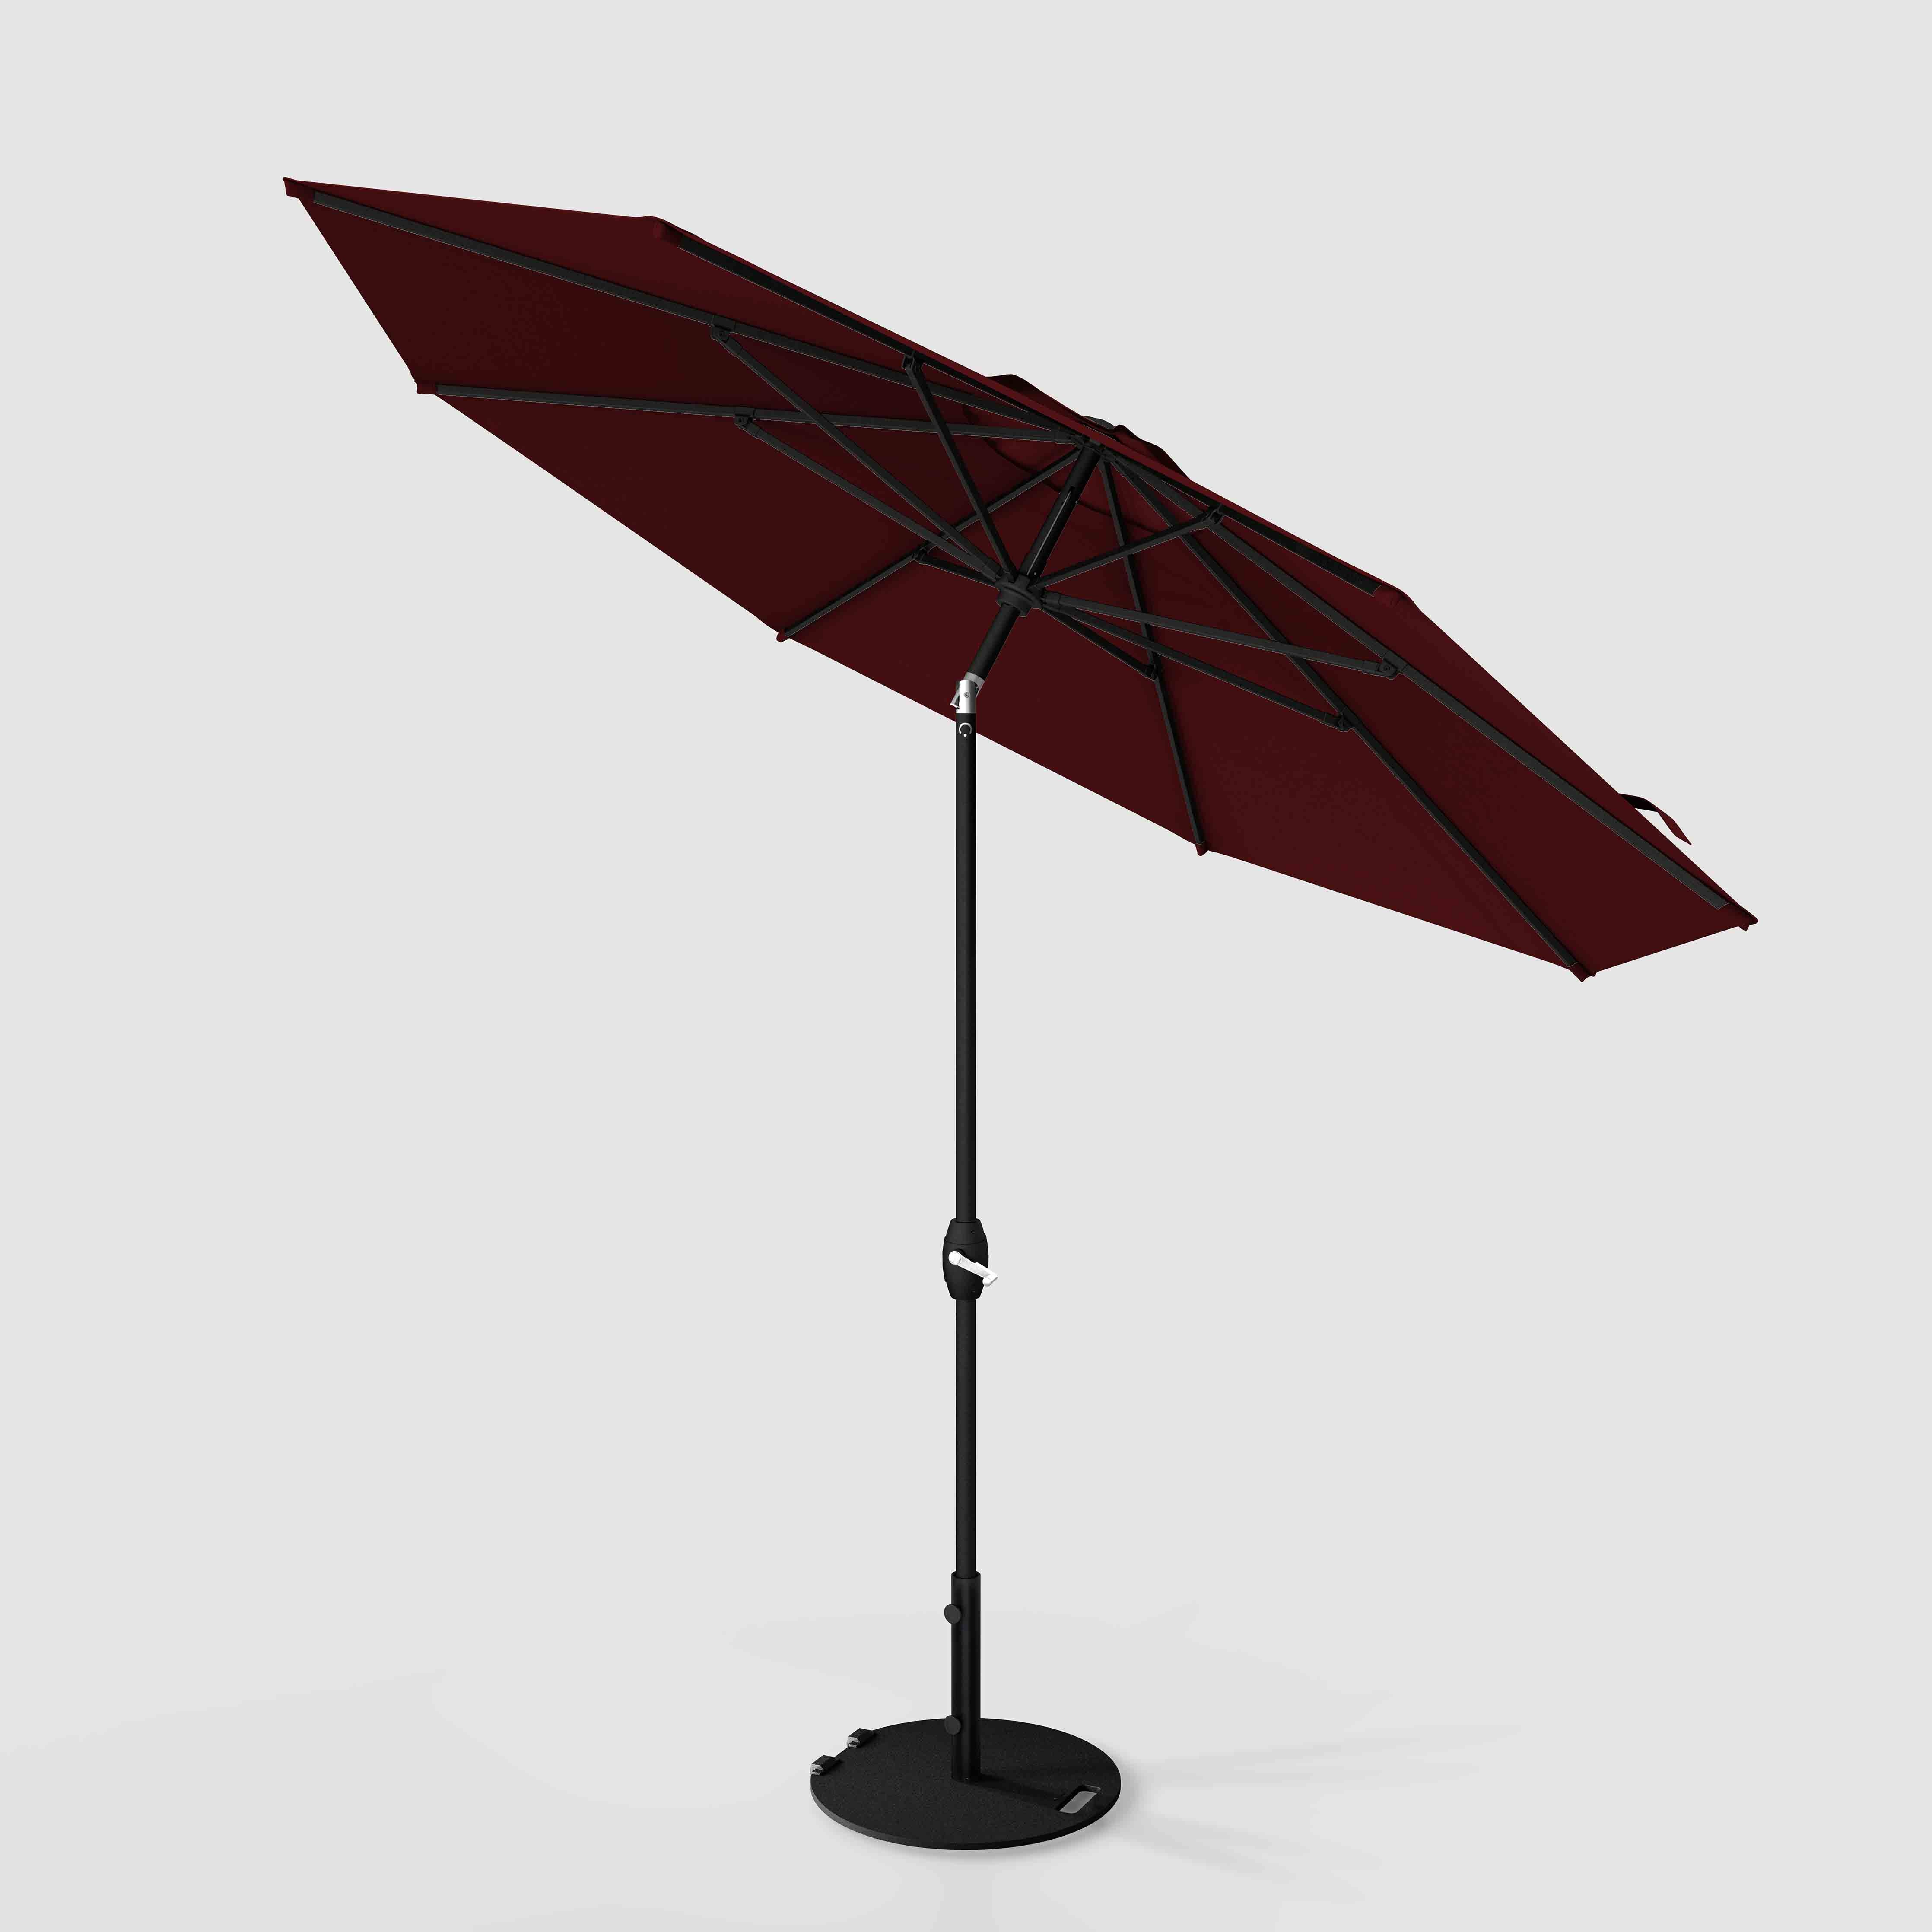 The Lean™ - Sunbrella Borgoña